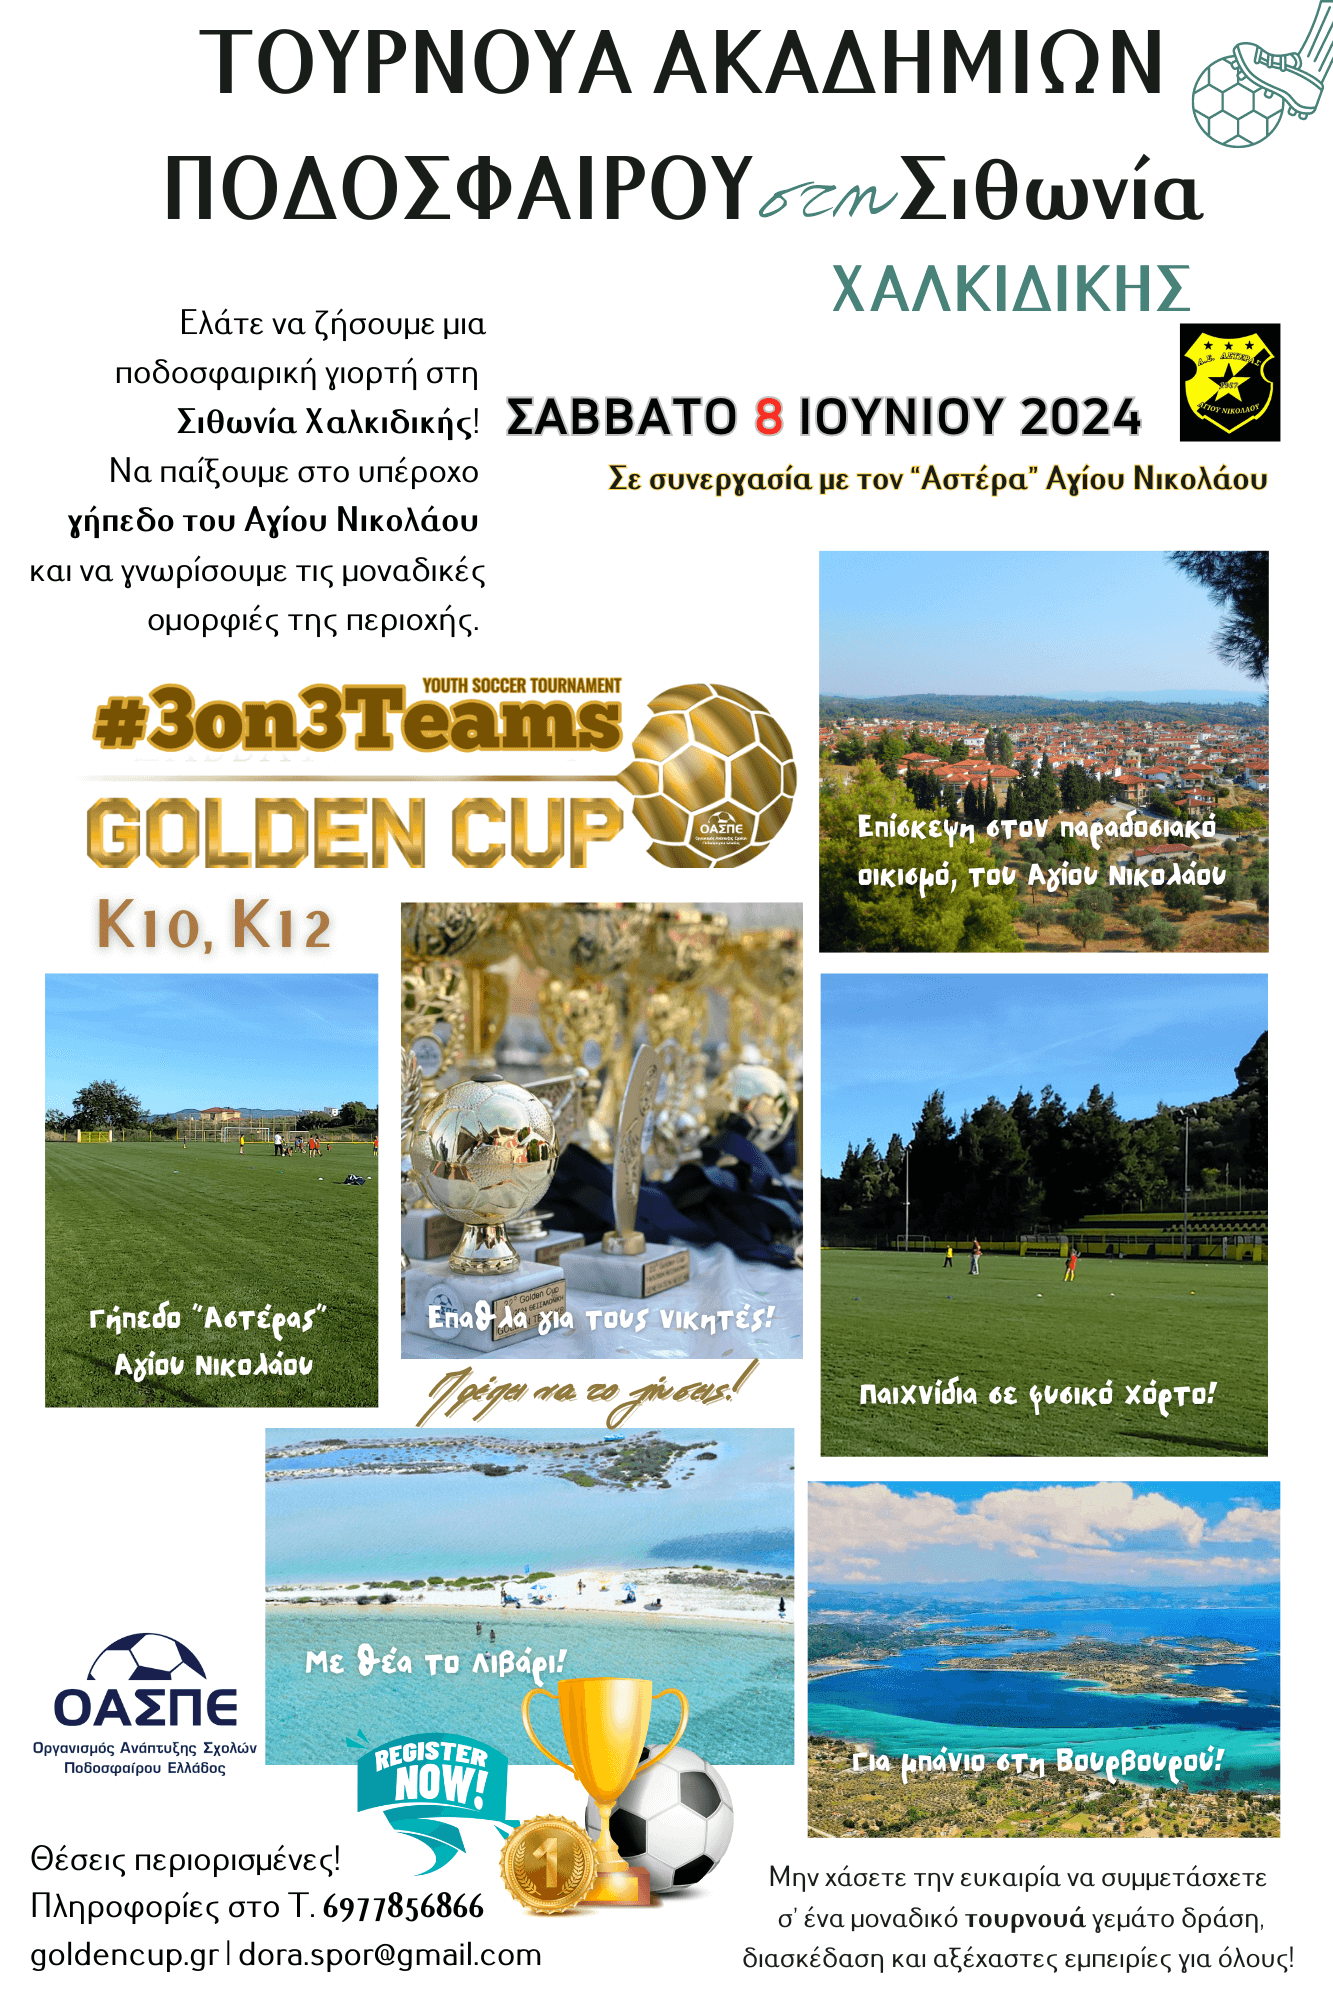 ΟΑΣΠΕ Ερχεται το Mini Golden Cup στη Σιθωνία Χαλκιδικής